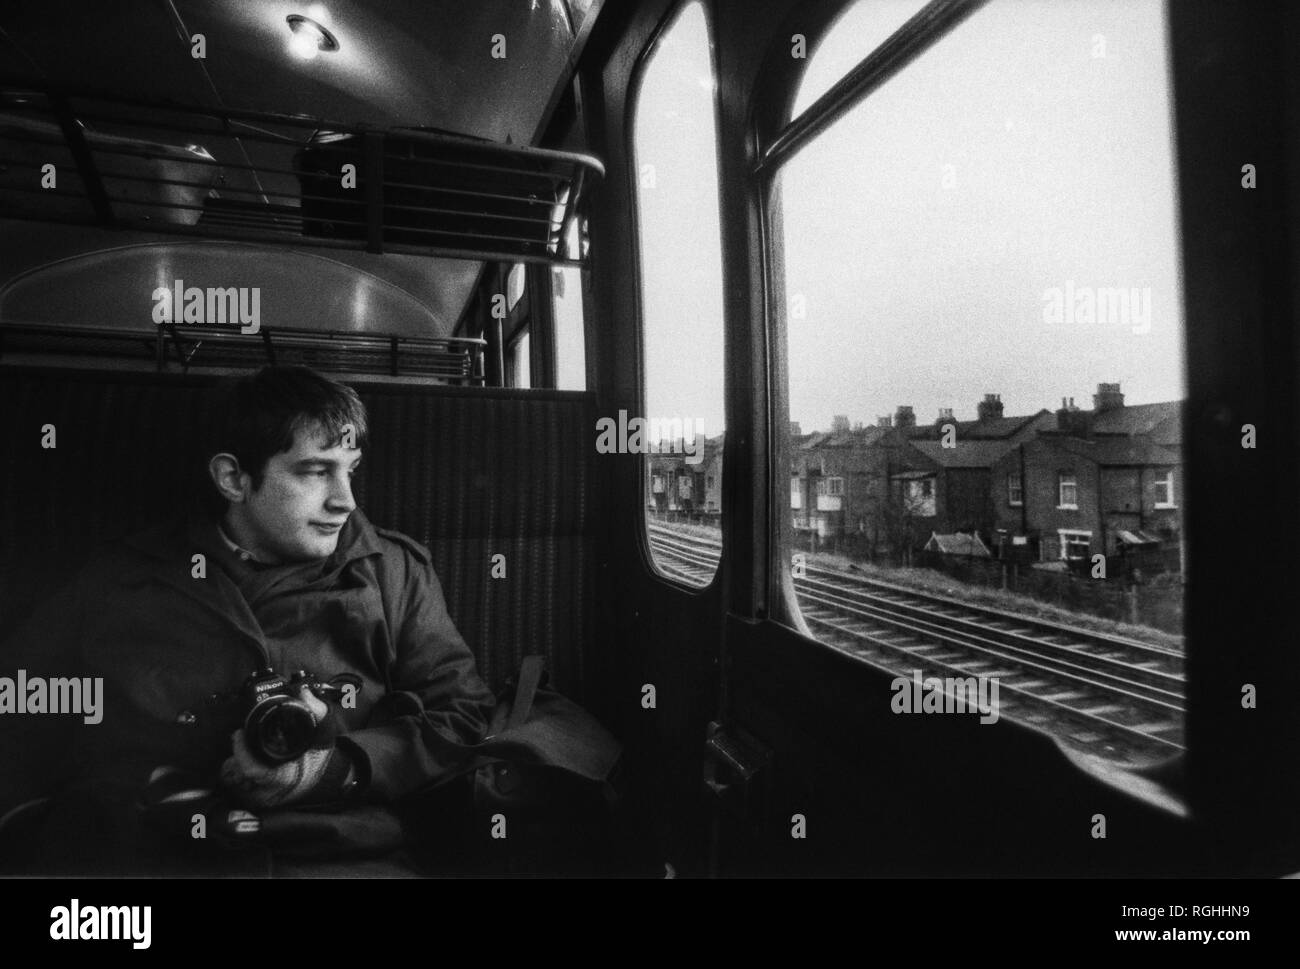 Image d'archive d'un photographe avec appareil photo reflex Nikon à la recherche par la fenêtre d'un British Rail train dans une porte claquer les faubourgs du sud de Londres, 1979, Londres, Angleterre Banque D'Images